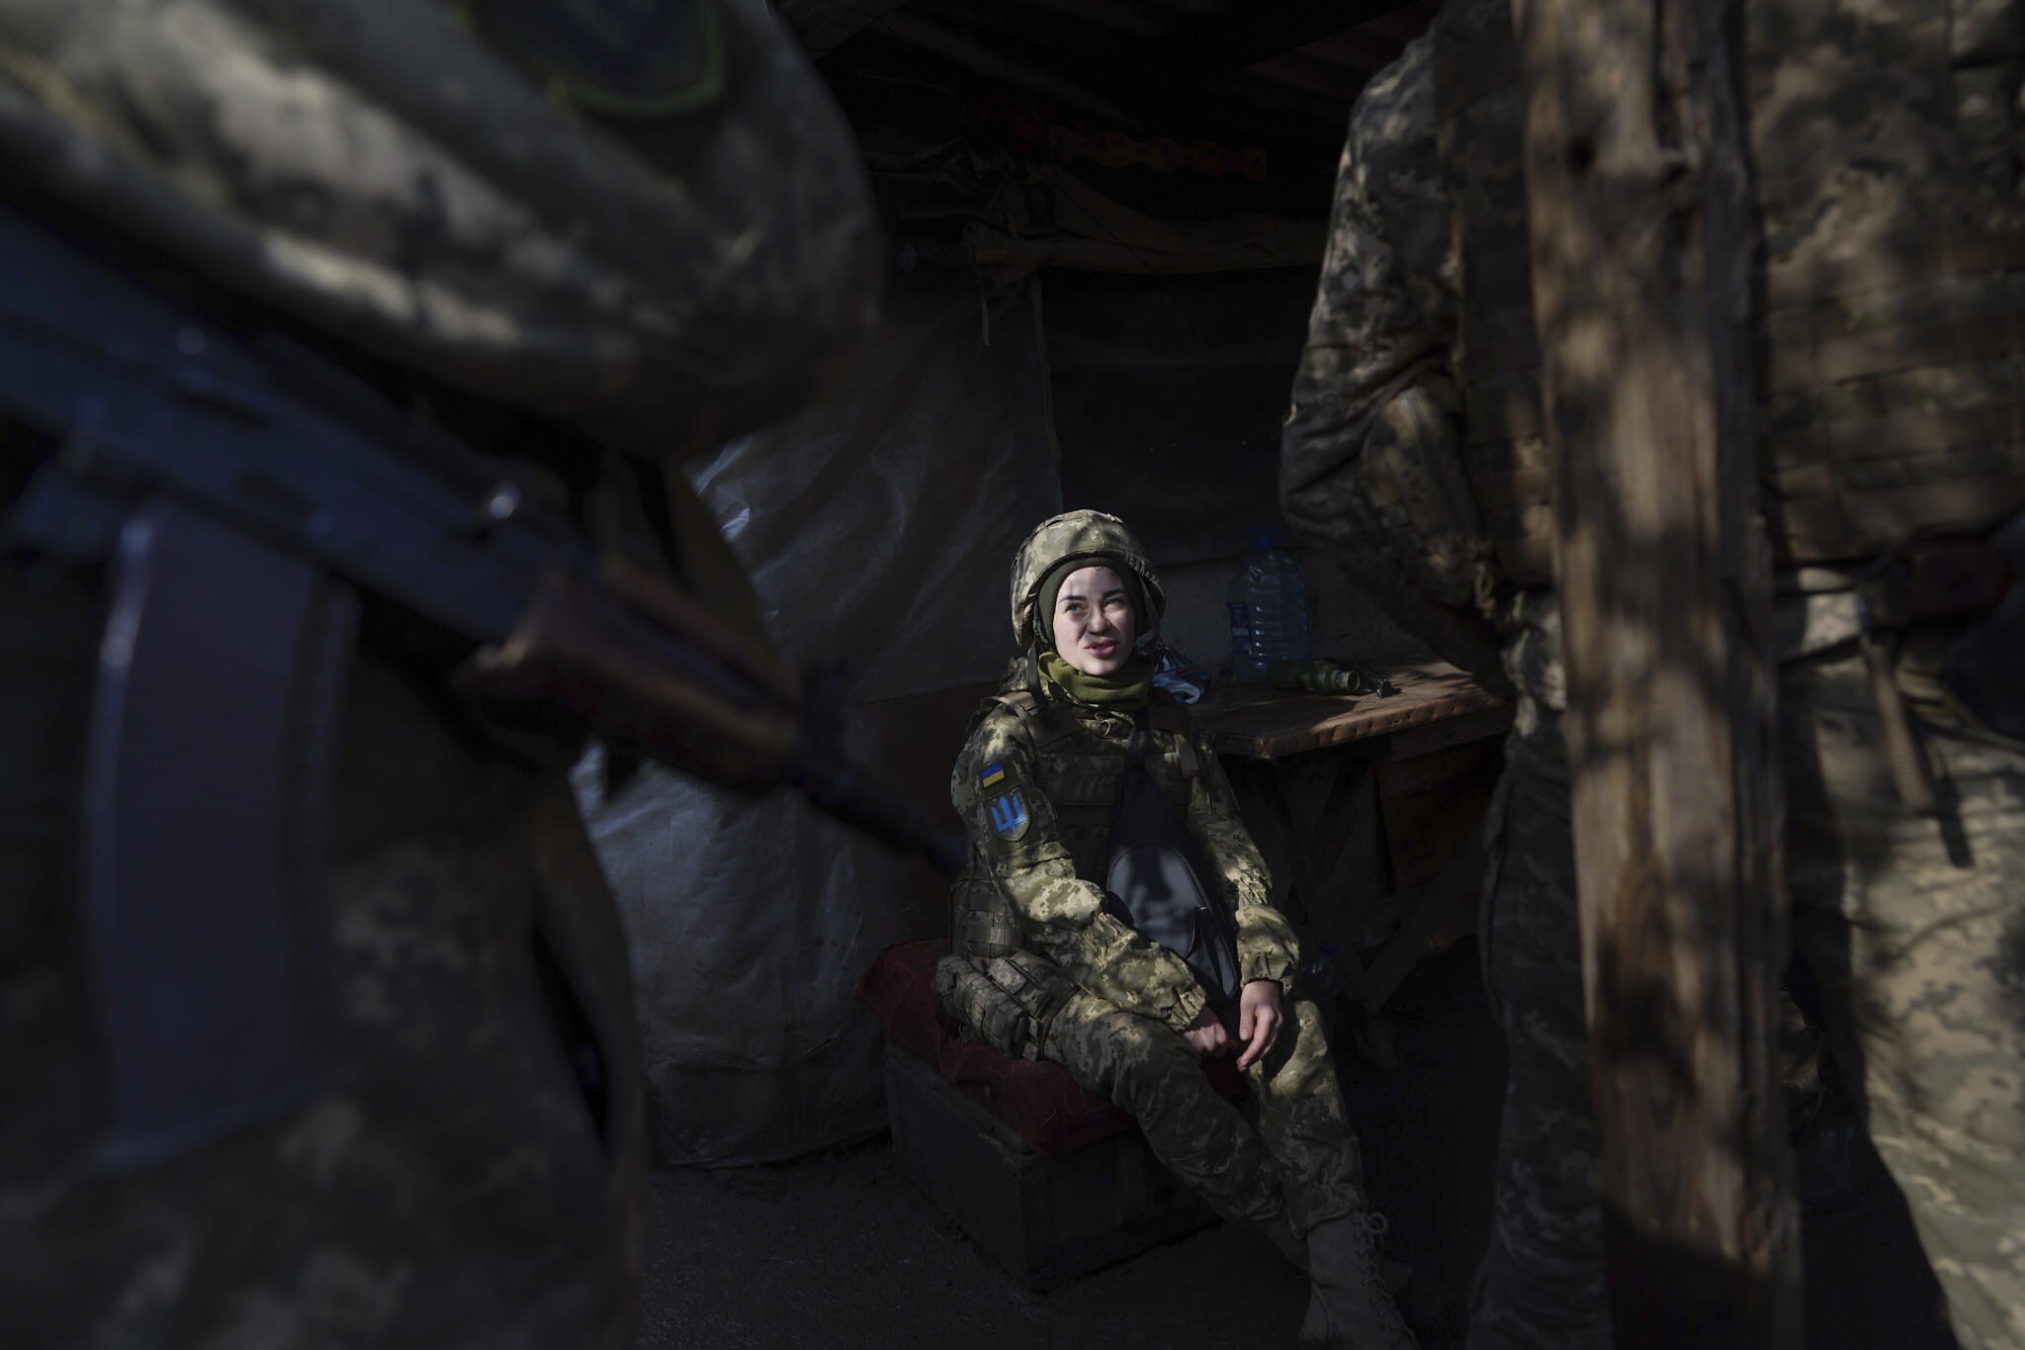 Una soldado ucraniana habla con sus compañeros sentada en un refugio en la línea de separación entre el territorio controlado por Ucrania y el territorio controlado por los rebeldes cerca de Svitlodarsk, en el este de Ucrania, el miércoles 23 de febrero de 2022. (AP Photo/Evgeniy Maloletka)